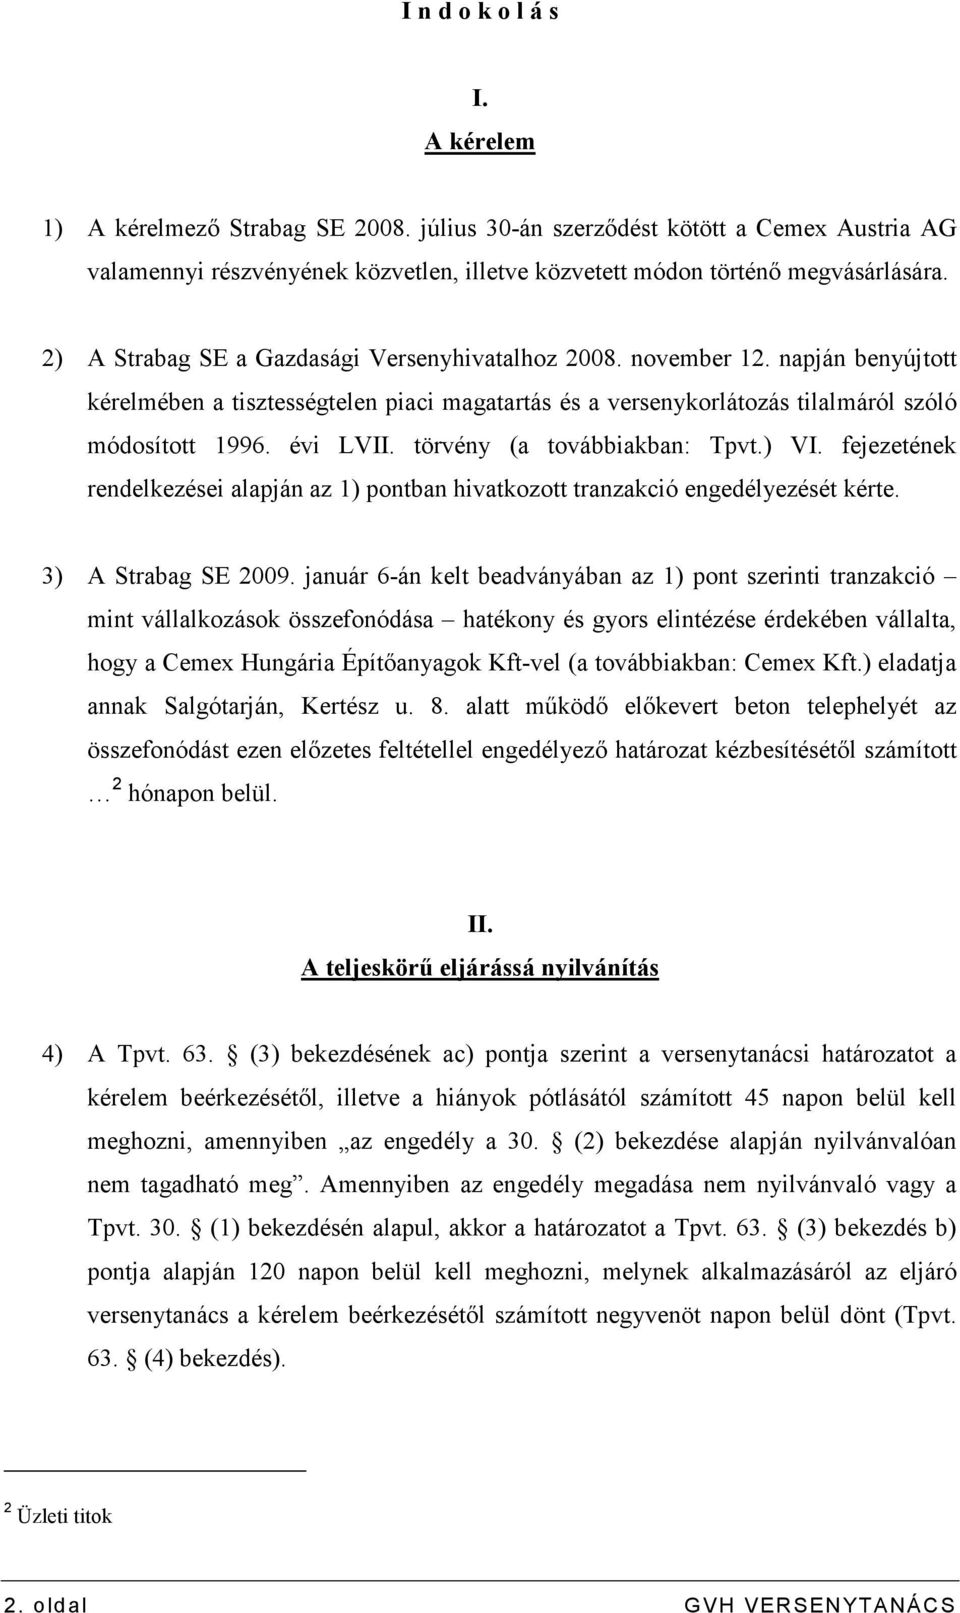 törvény (a továbbiakban: Tpvt.) VI. fejezetének rendelkezései alapján az 1) pontban hivatkozott tranzakció engedélyezését kérte. 3) A Strabag SE 2009.